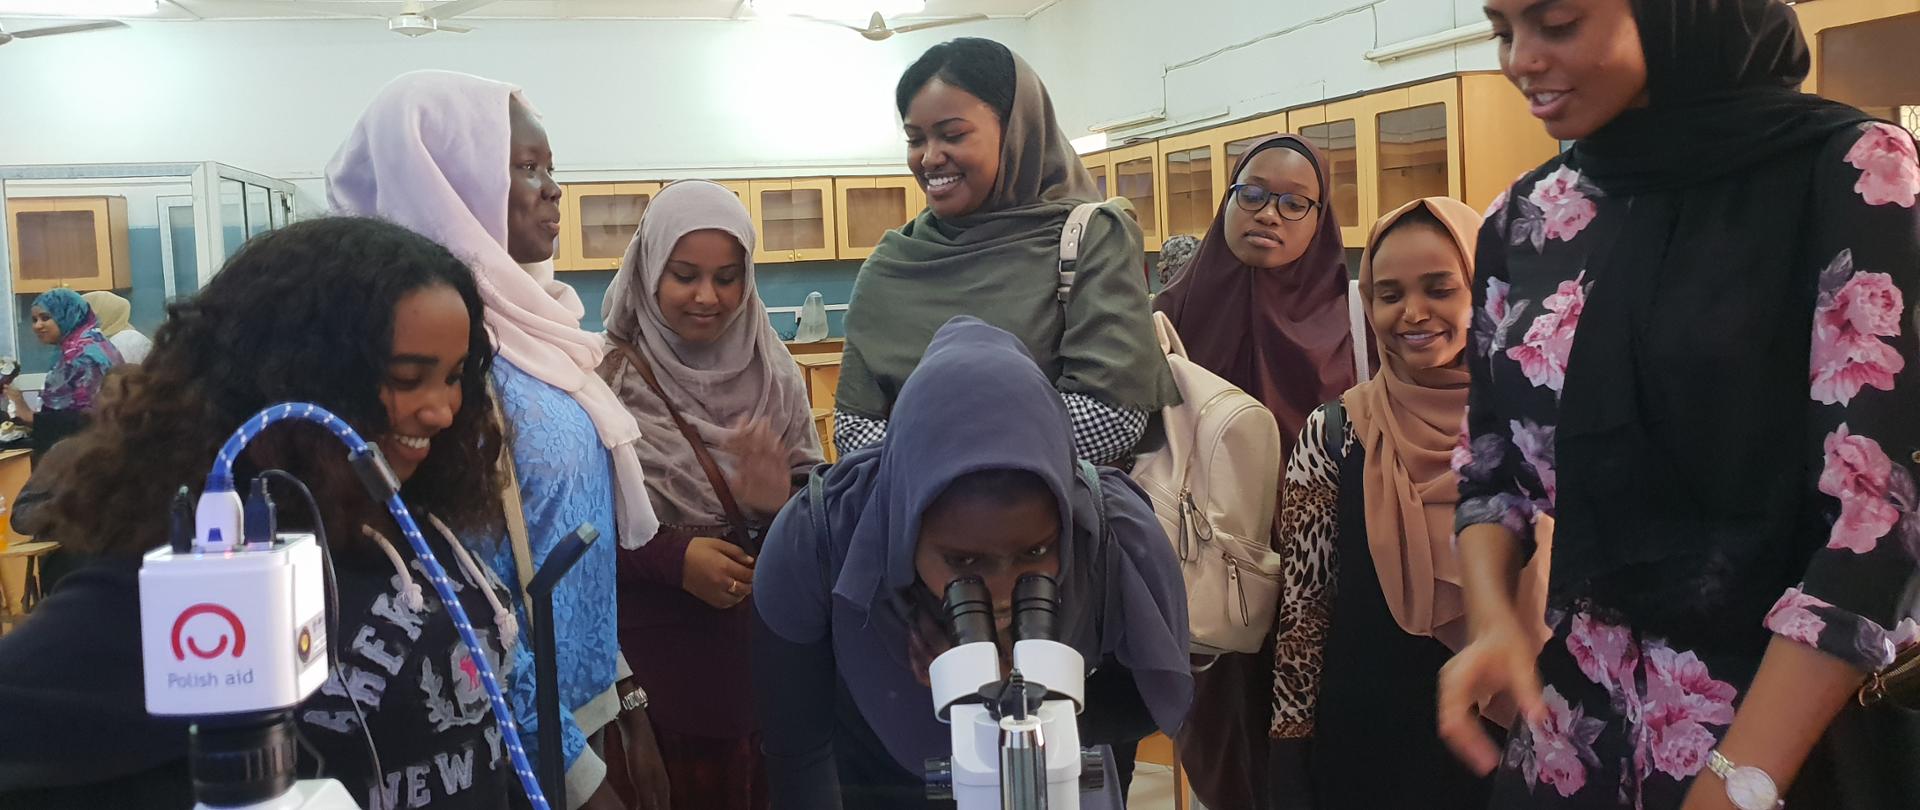 Wyposażenie multimedialnej pracowni mikroskopii na uniwersytecie dla kobiet w Sudanie